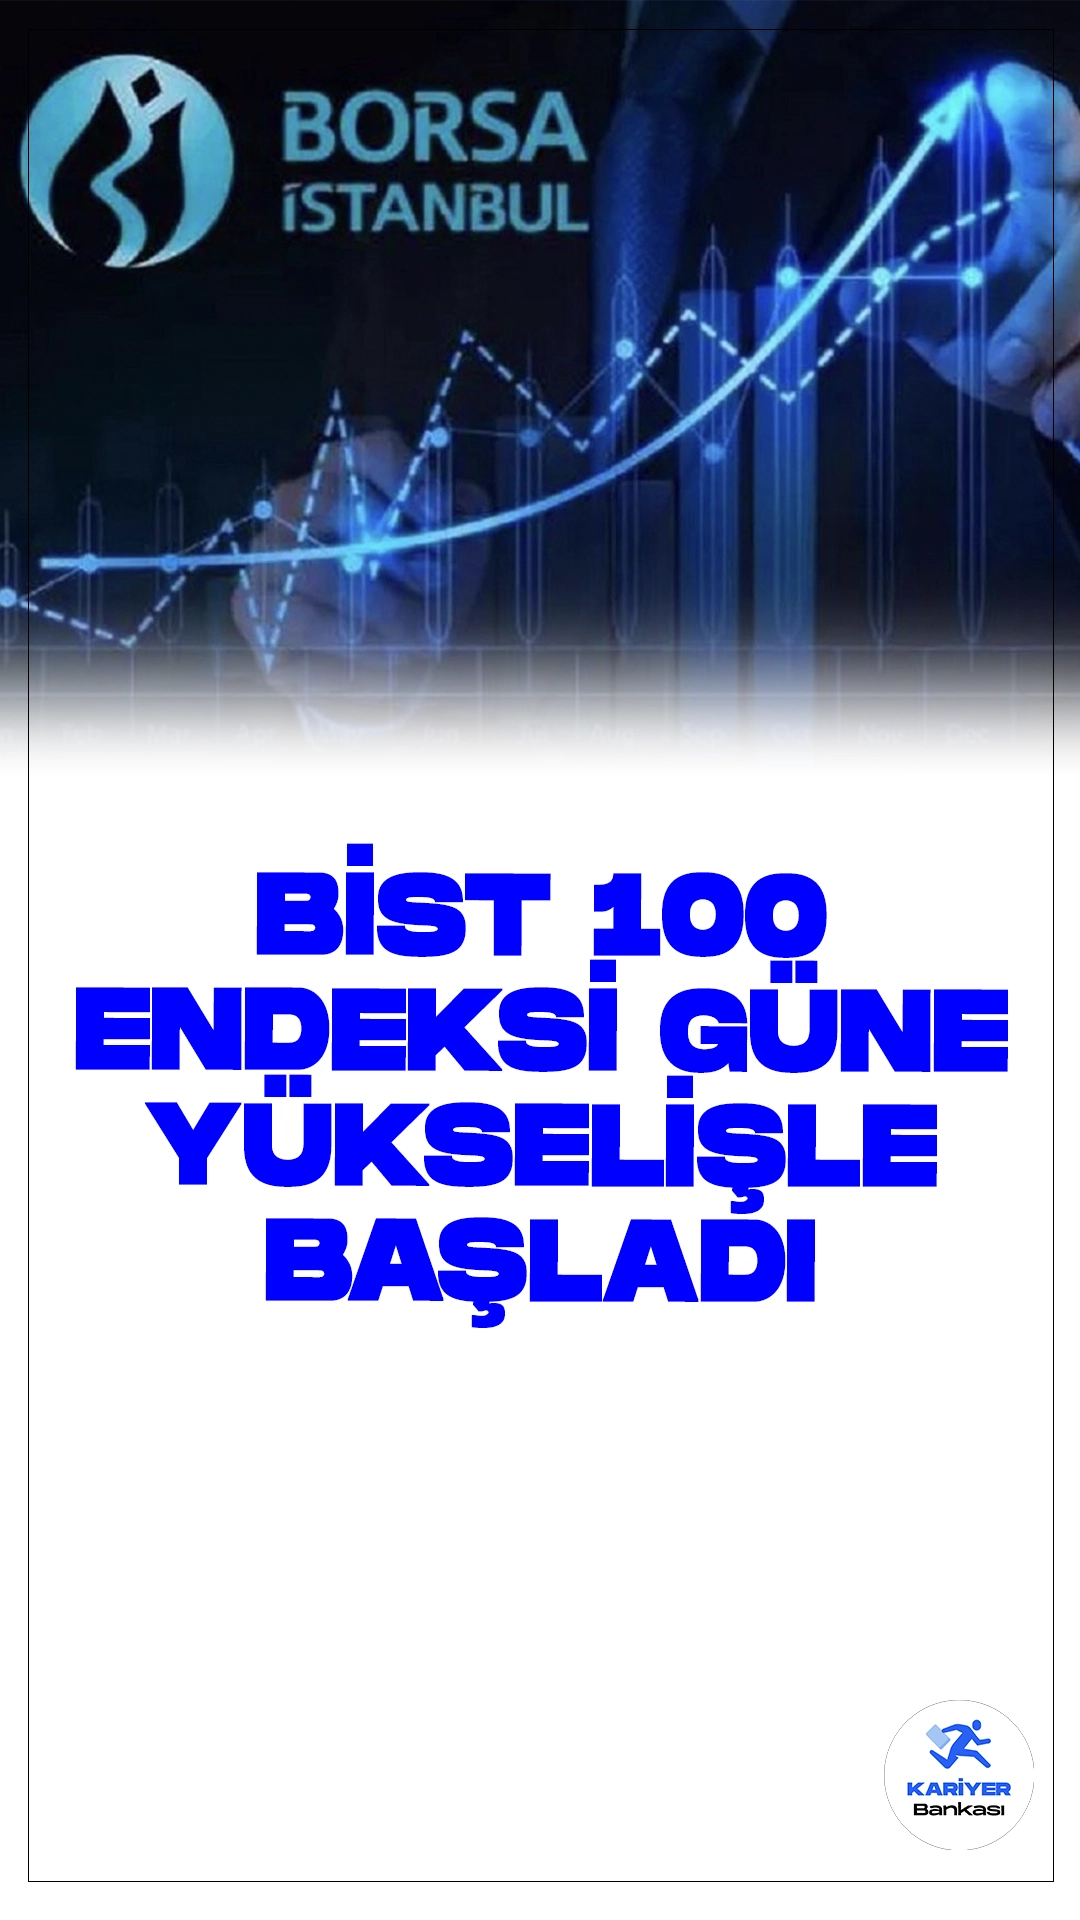 BIST 100 Endeksi Güne Yükselişle Başladı.Borsa İstanbul'da BIST 100 endeksi, güne yüzde 0,37 yükselişle 10.403,23 puandan başladı.